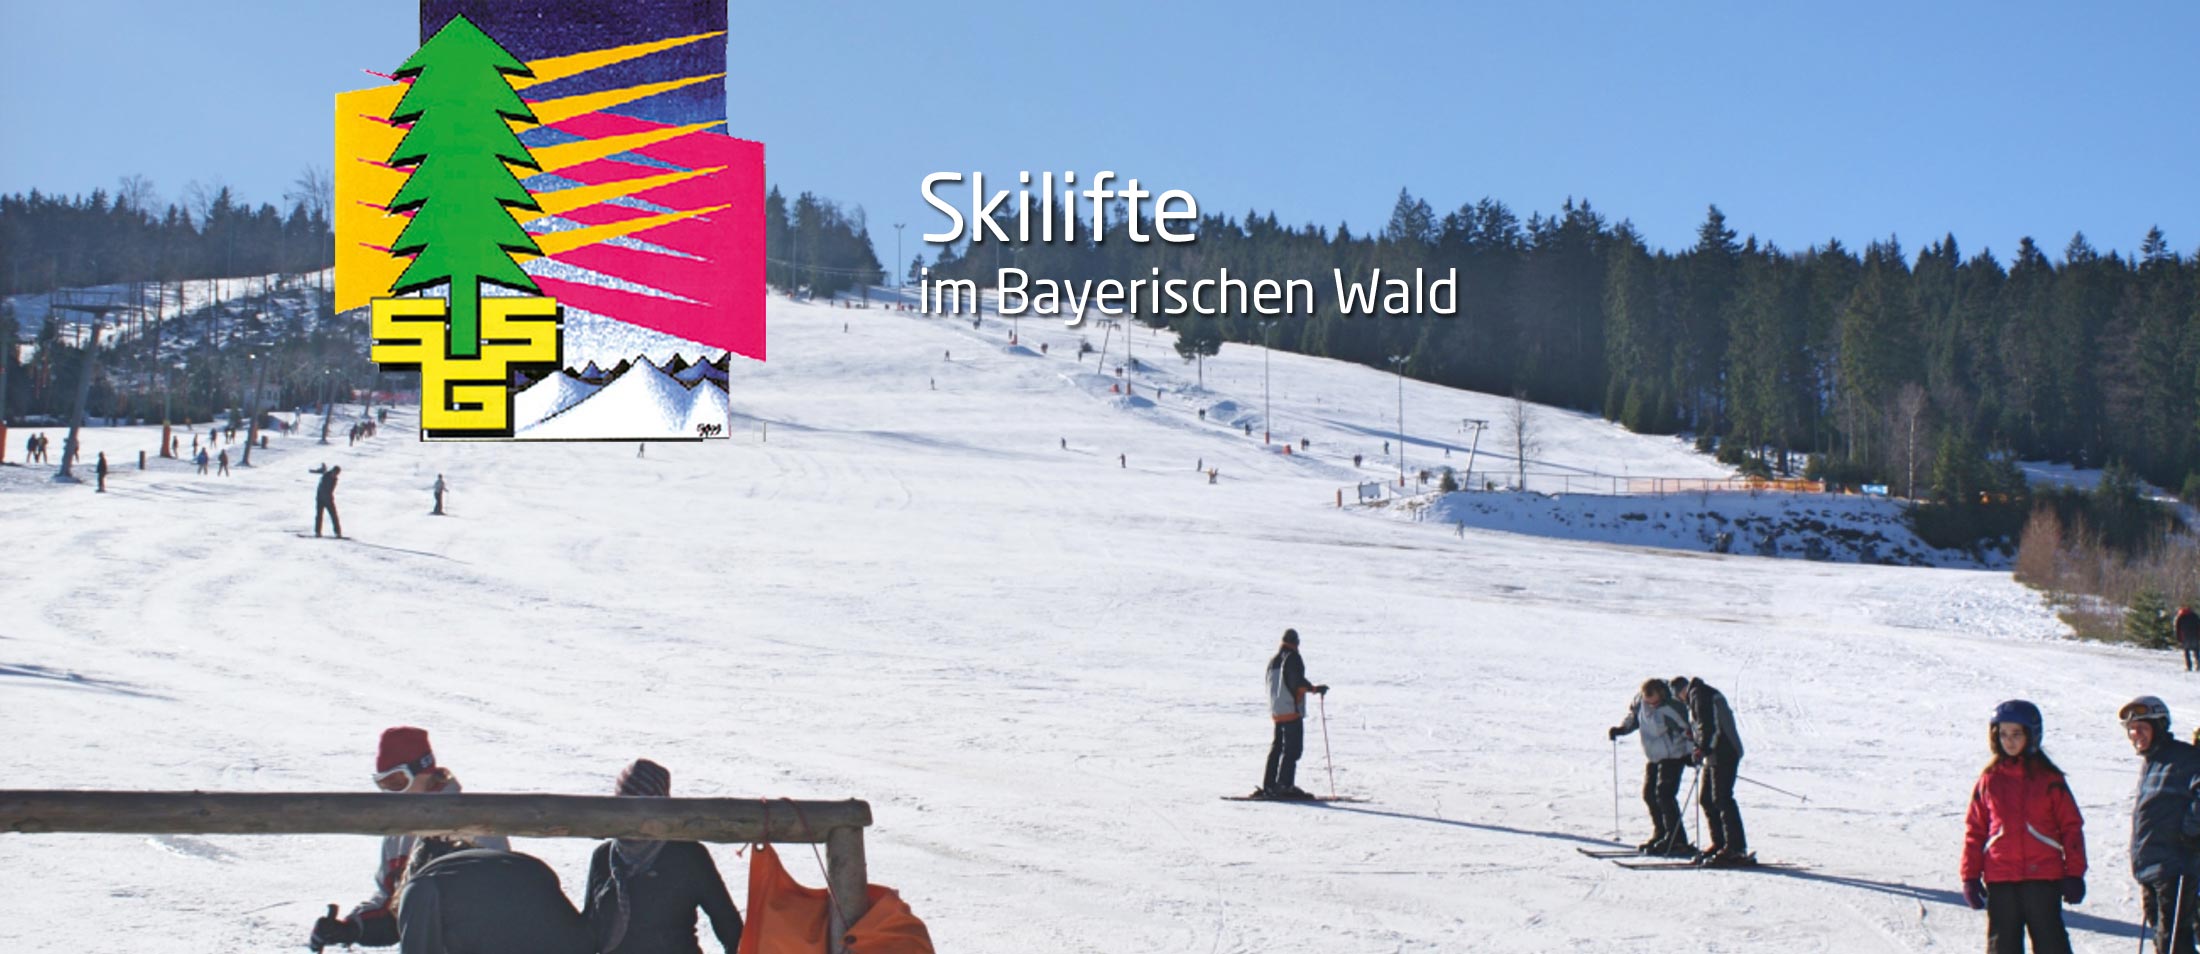 Skilifte im Bayerischen Wald